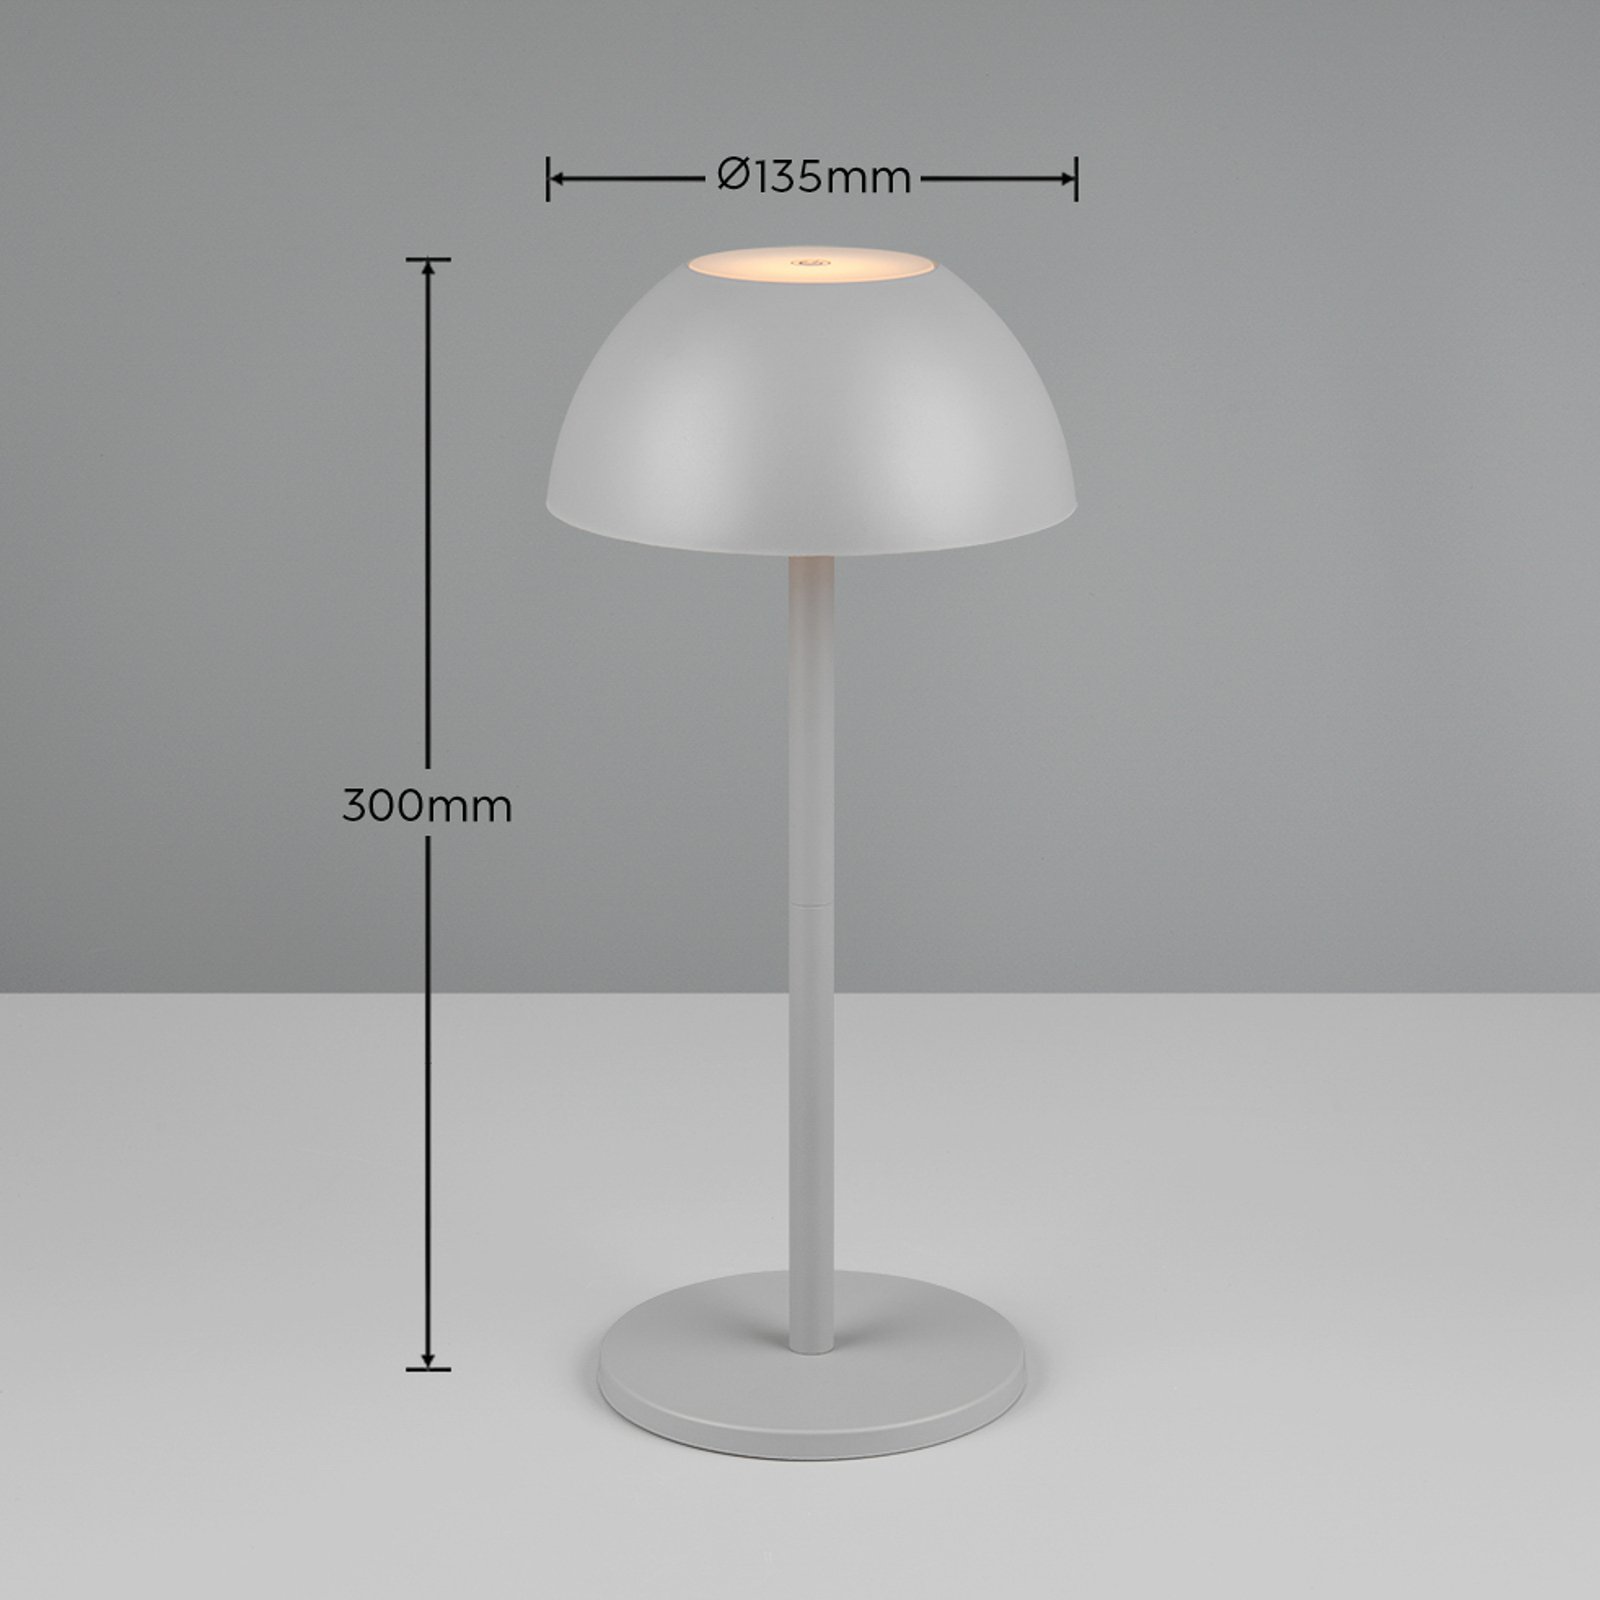 Ricardo LED stolová lampa s dobíjaním, sivá, výška 30 cm, plast